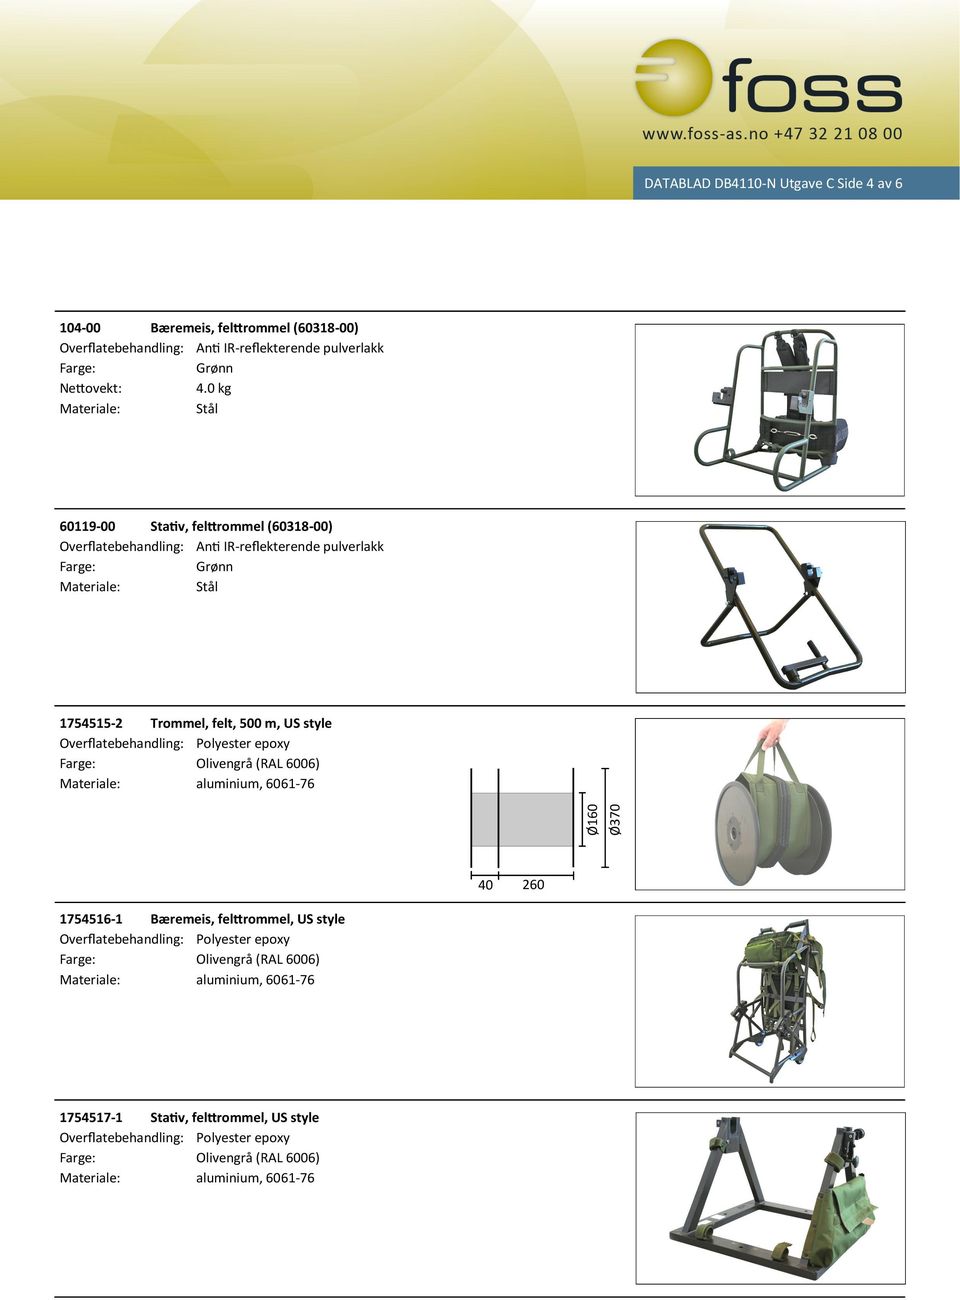 Olivengrå (RAL 6006) aluminium, 6061-76 40 260 1754516-1 Bæremeis, felttrommel, US style Overflatebehandling: Polyester